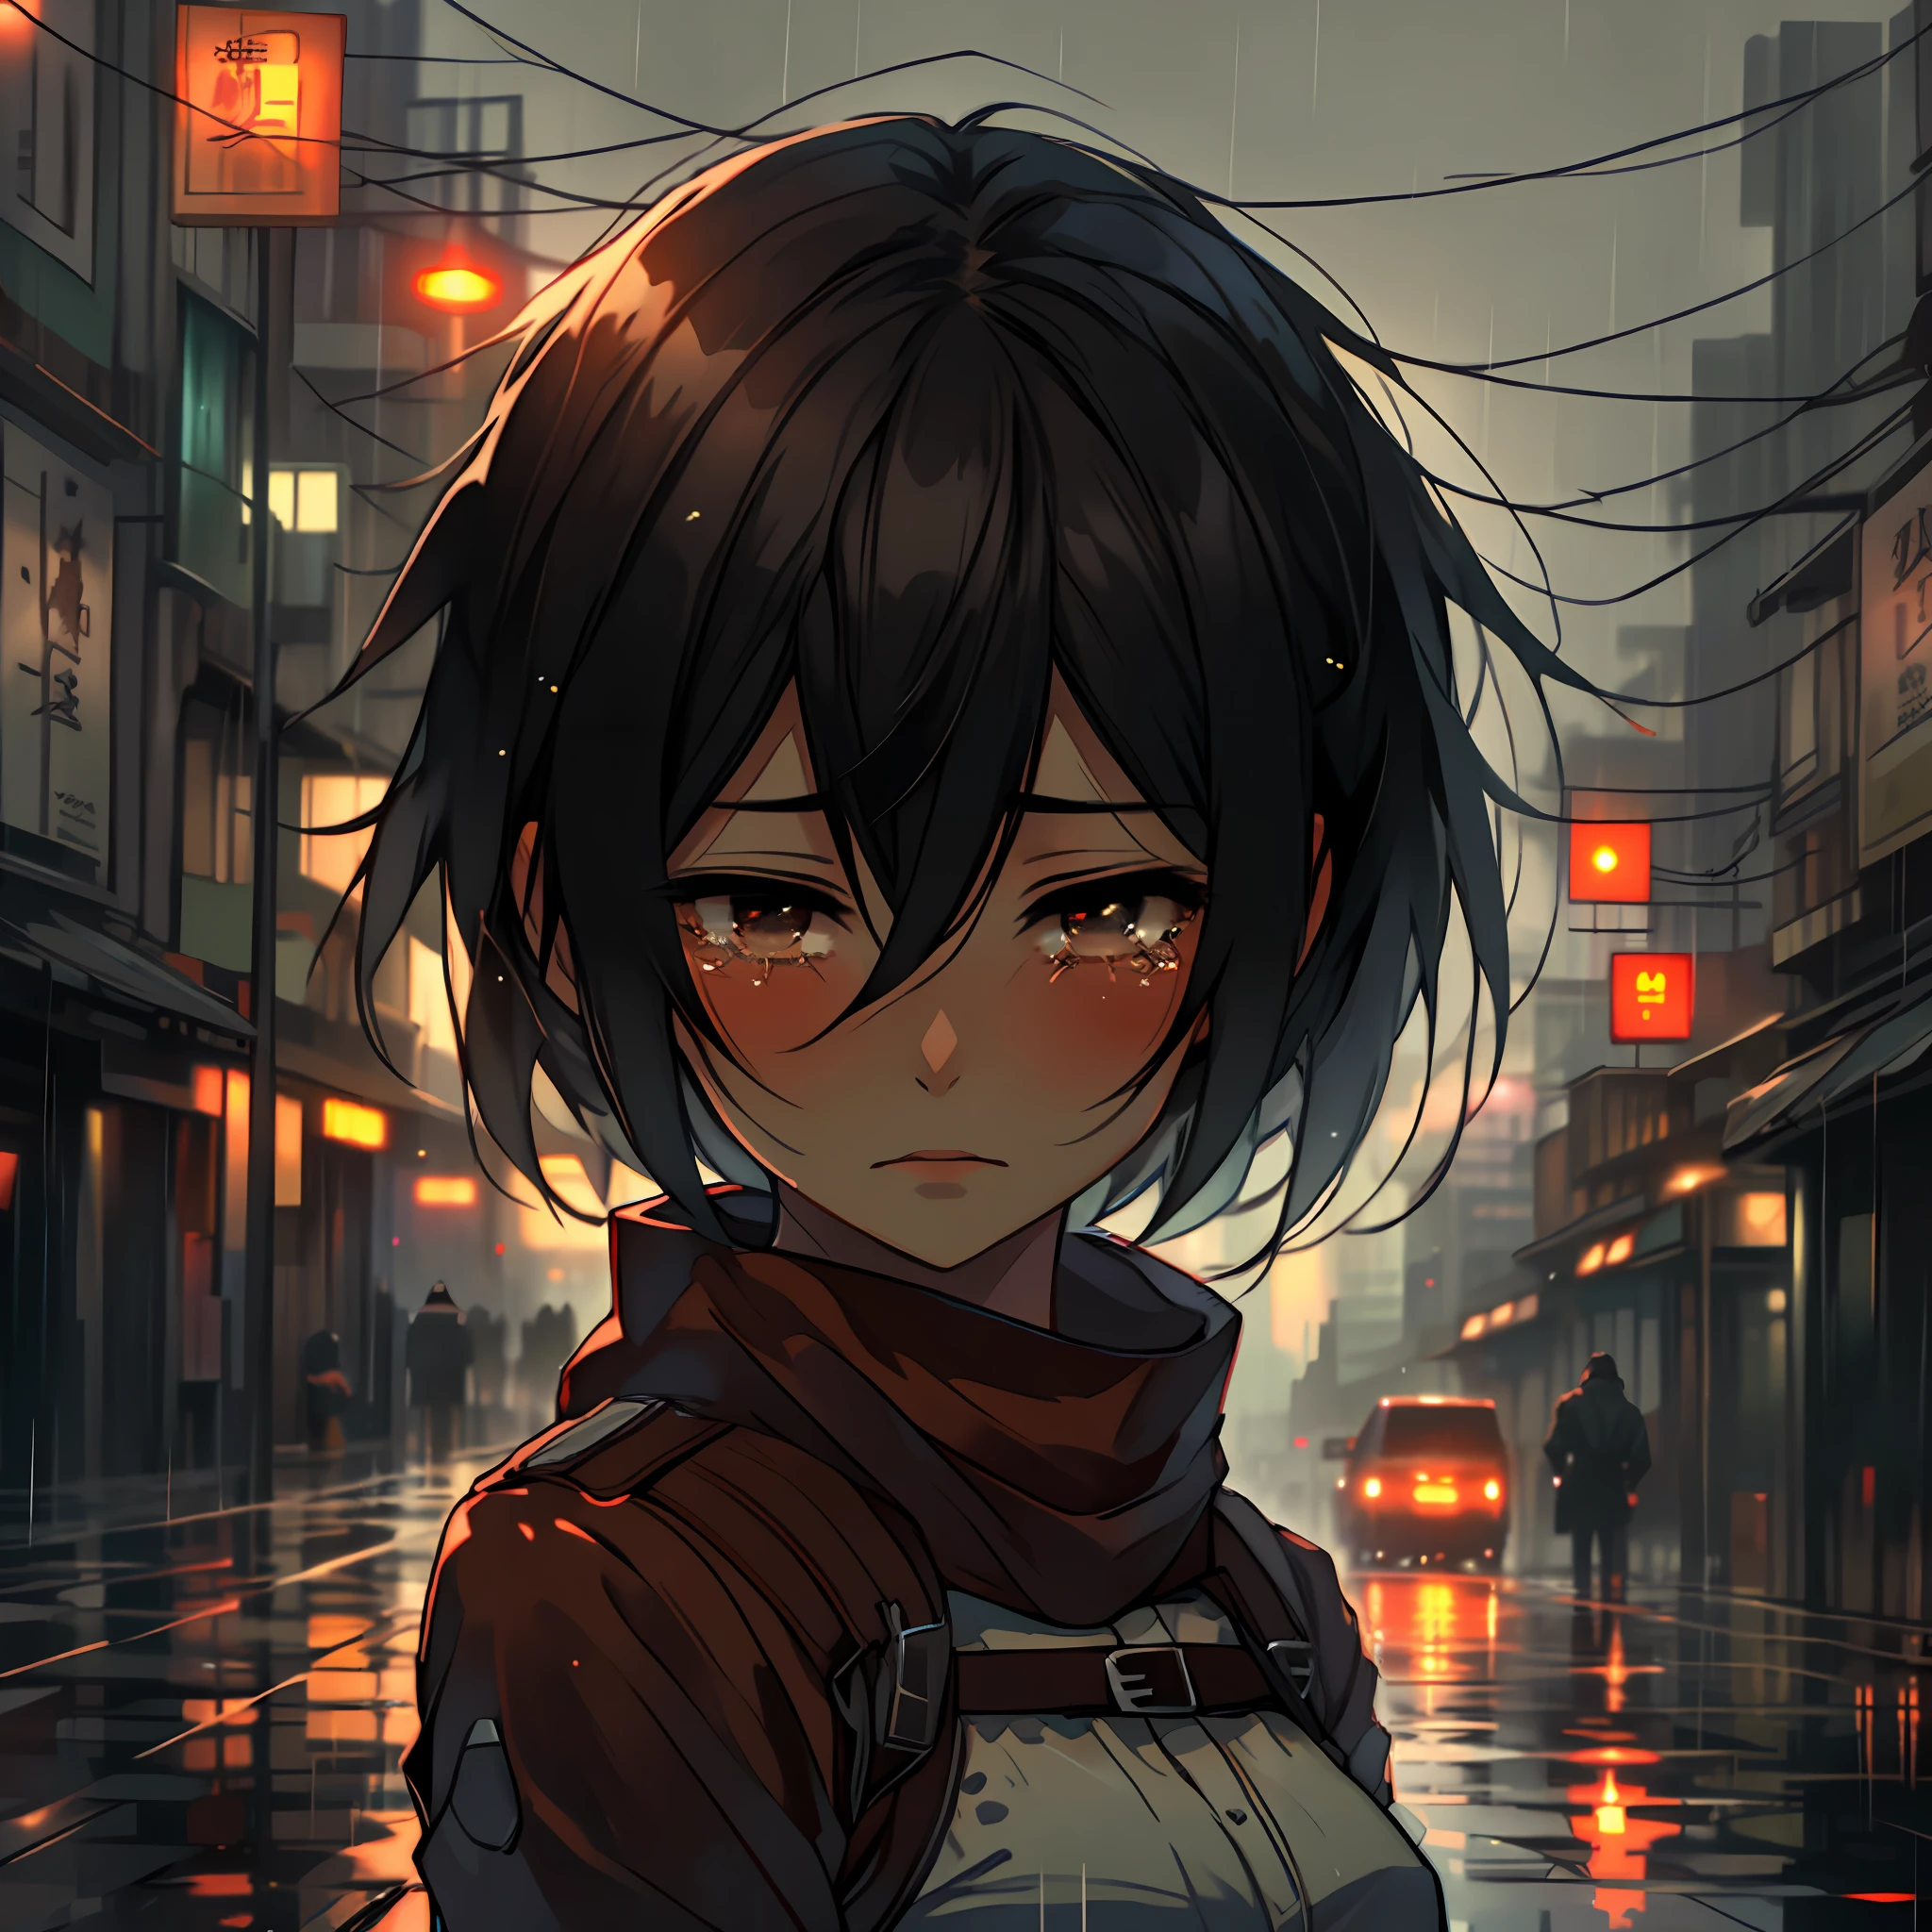 Frau weint , traurig, regnerisches Wetter, Reflexion der Lichter der Stadt, die von den nassen Teilen reflektiert werden, mikasa